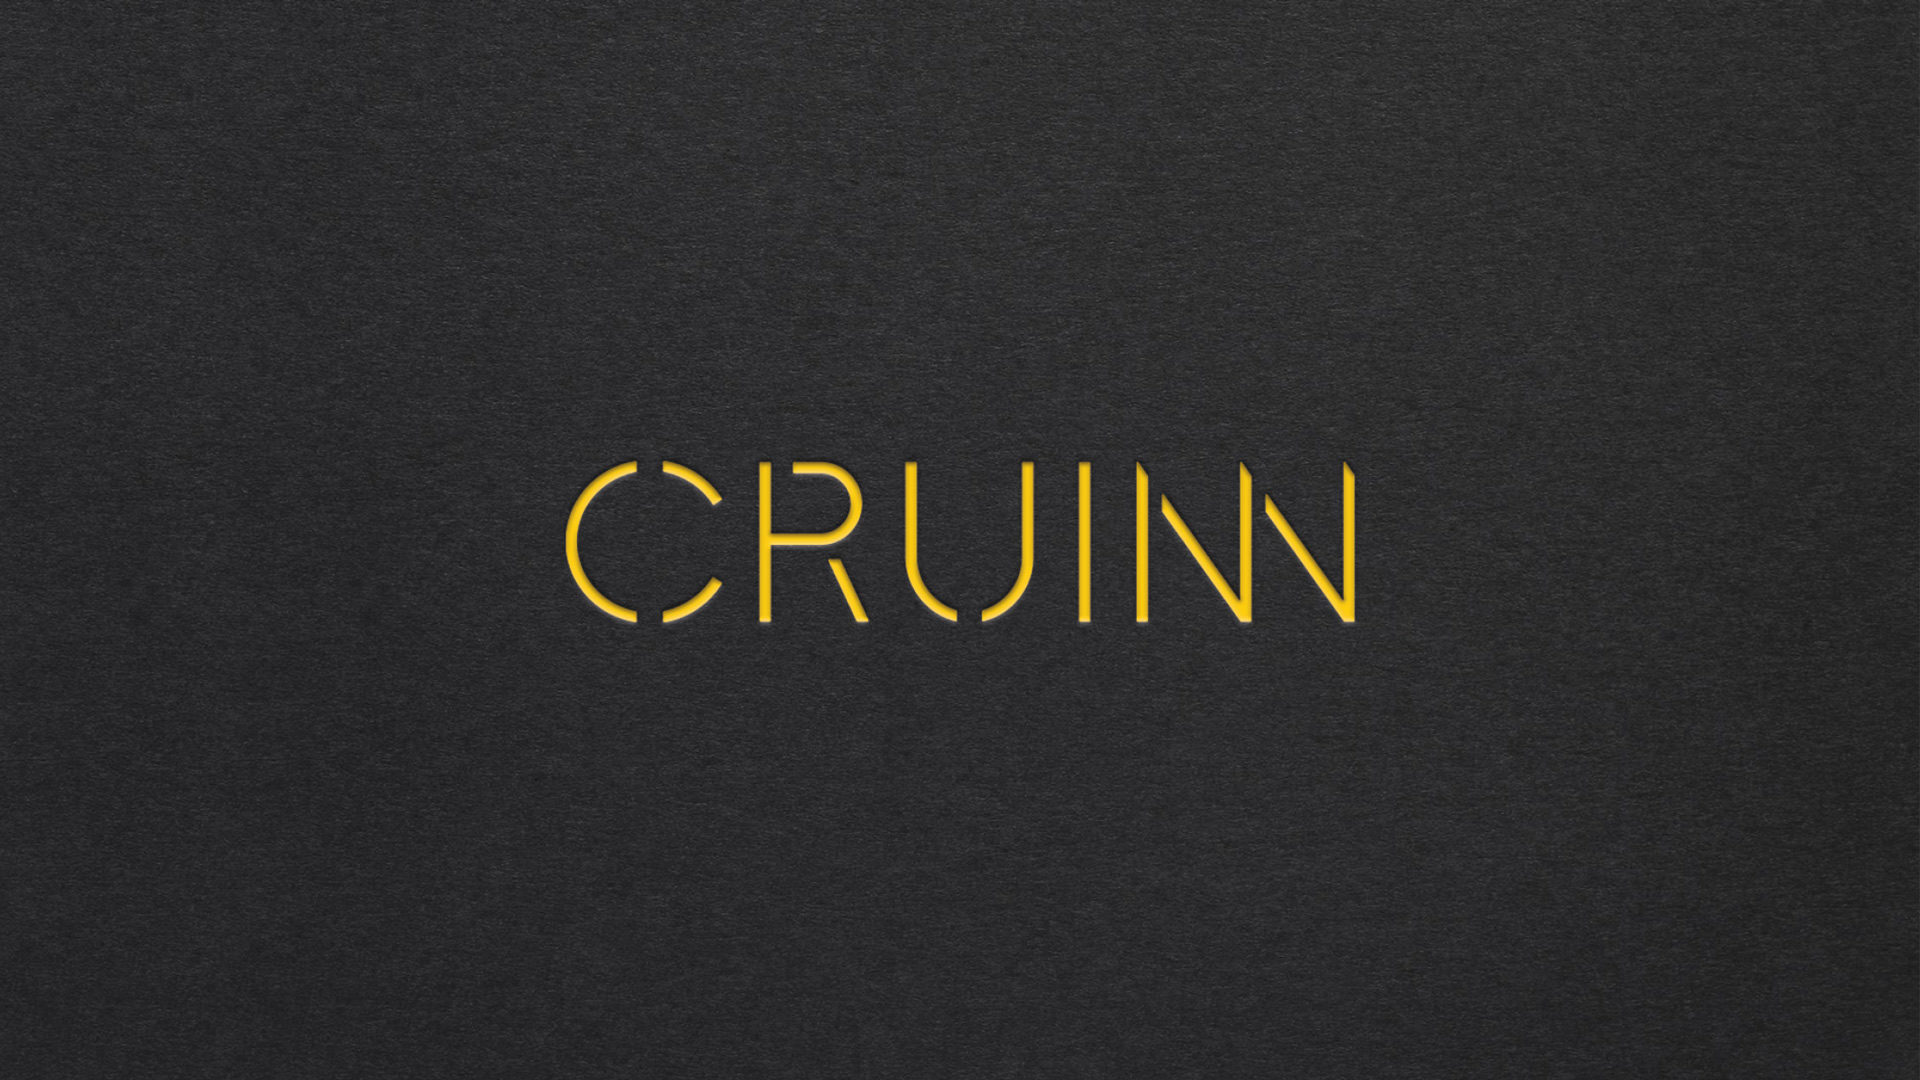 Cruinn Consulting